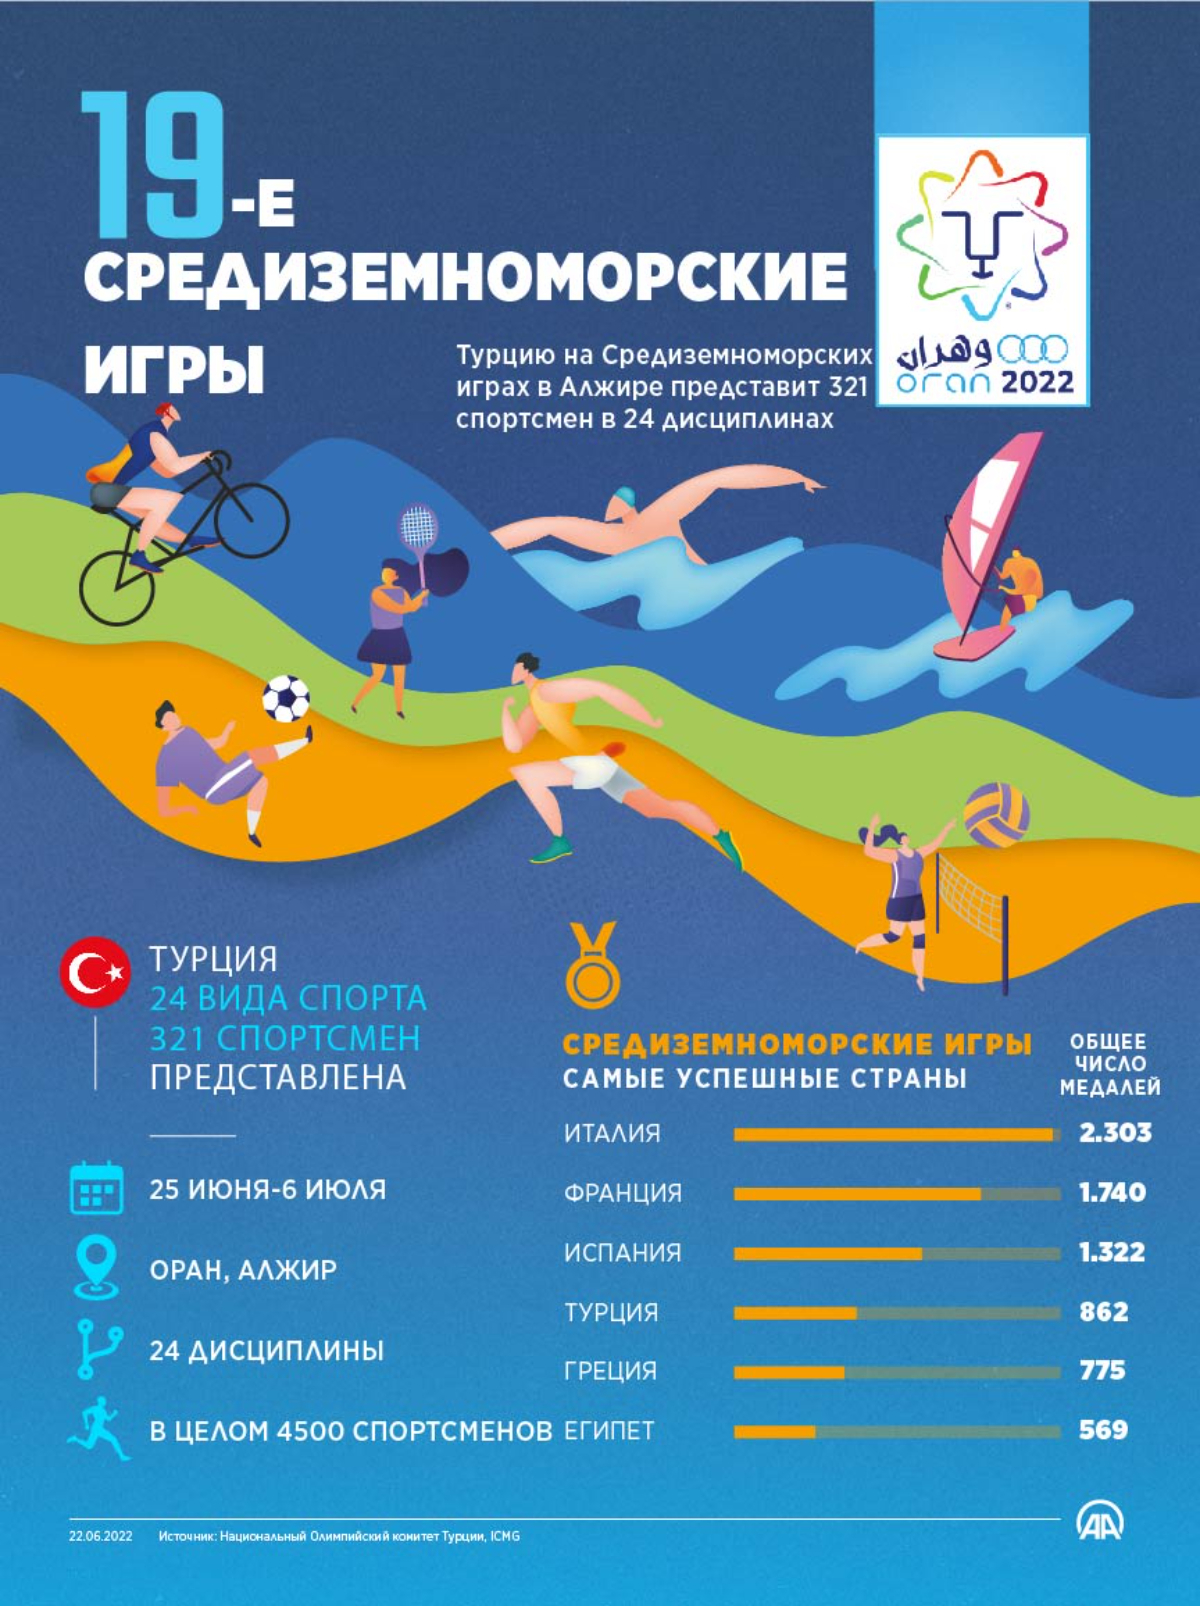 В XIX Средиземноморских играх выступит 321 турецкий спортсмен